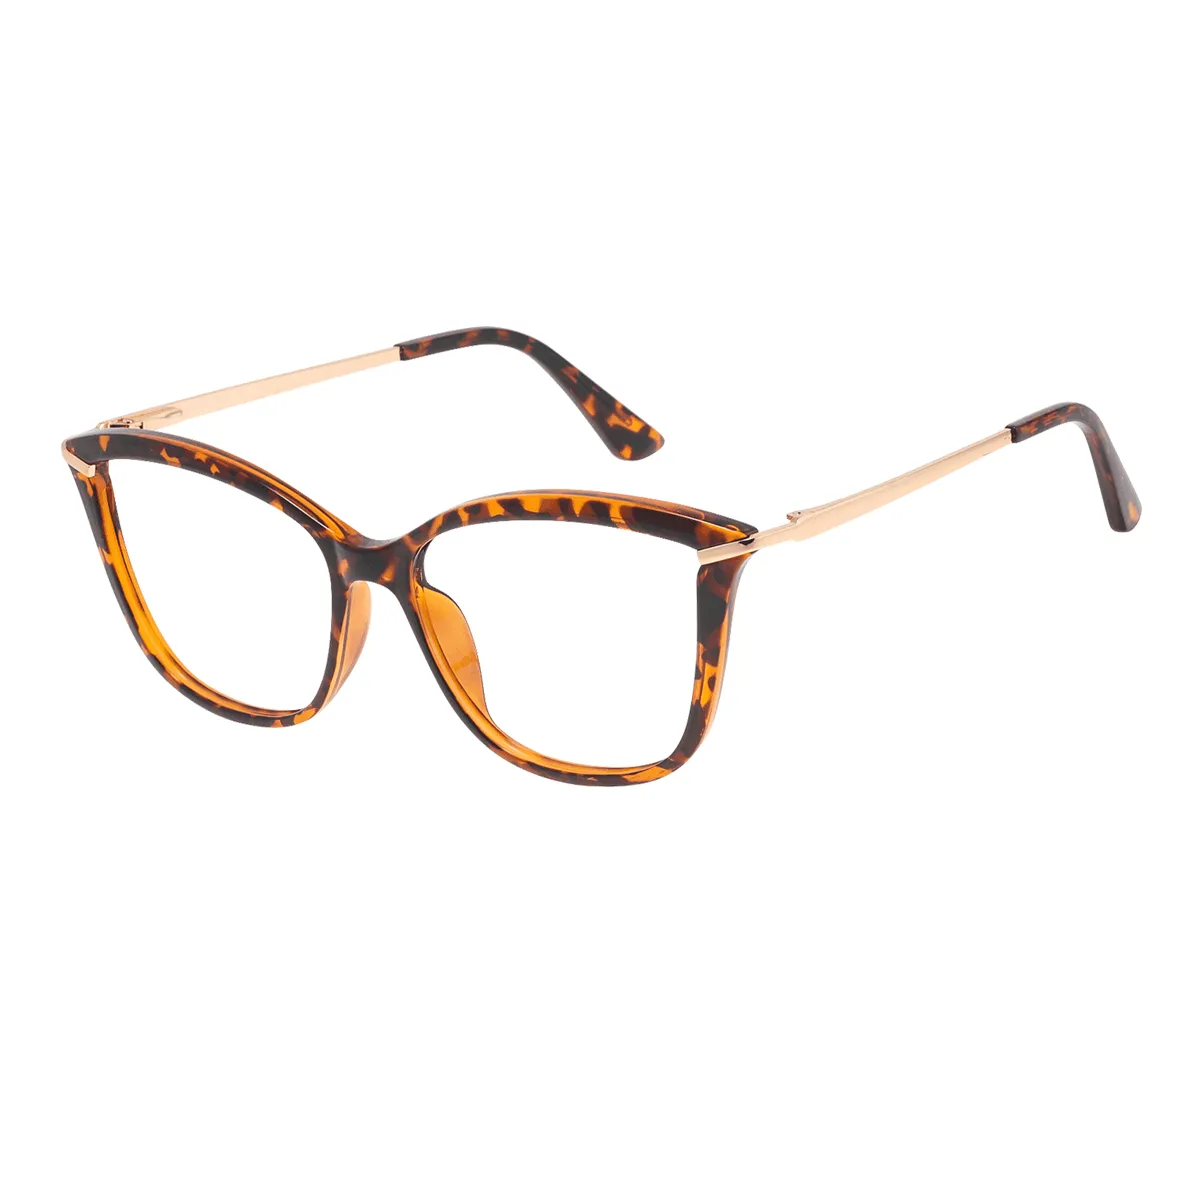 Effie - Cat-eye Tortoiseshell Glasses for Women